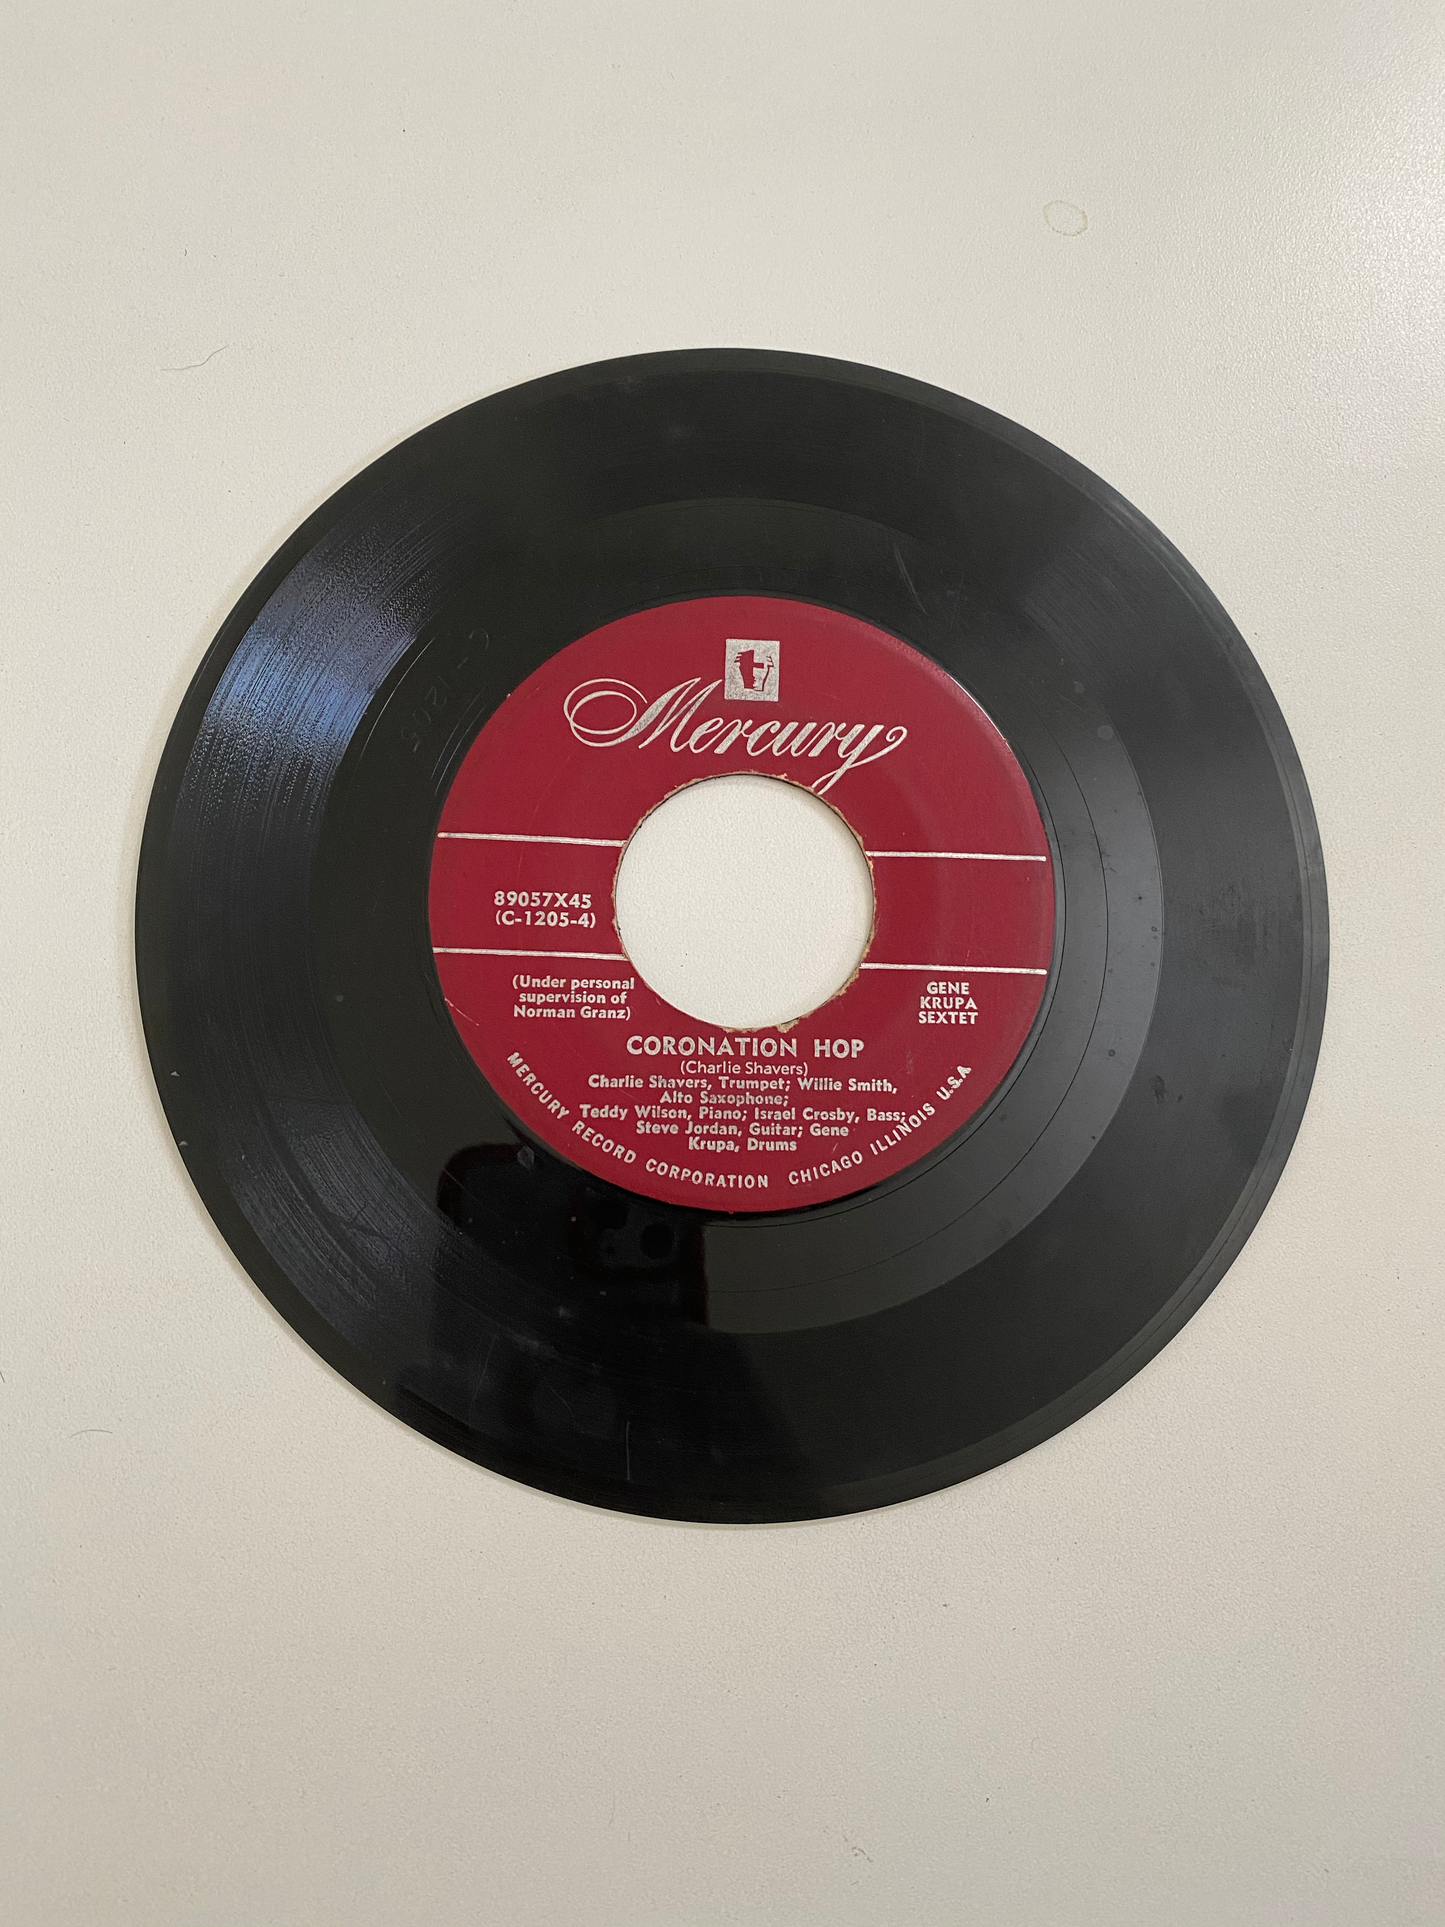 Gene Krupa Sextet - Coronation Hop | 45 The Vintedge Co.